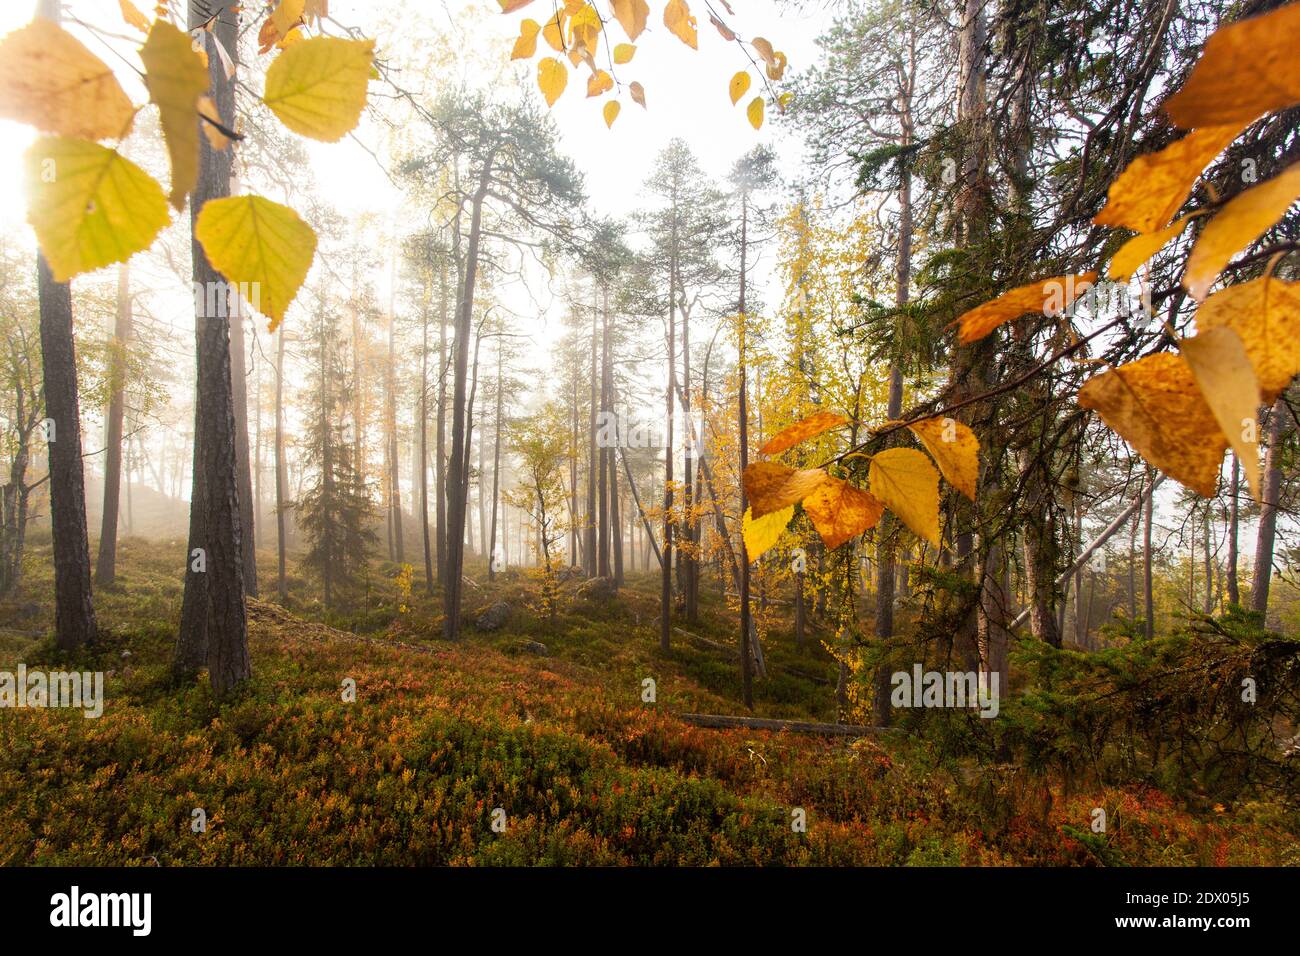 Forêt de taïga vierge et colorée dans le nord de la Finlande, dans le parc national d'Oulanka, au cours d'un lever de soleil brumeux dans le feuillage d'automne. Banque D'Images